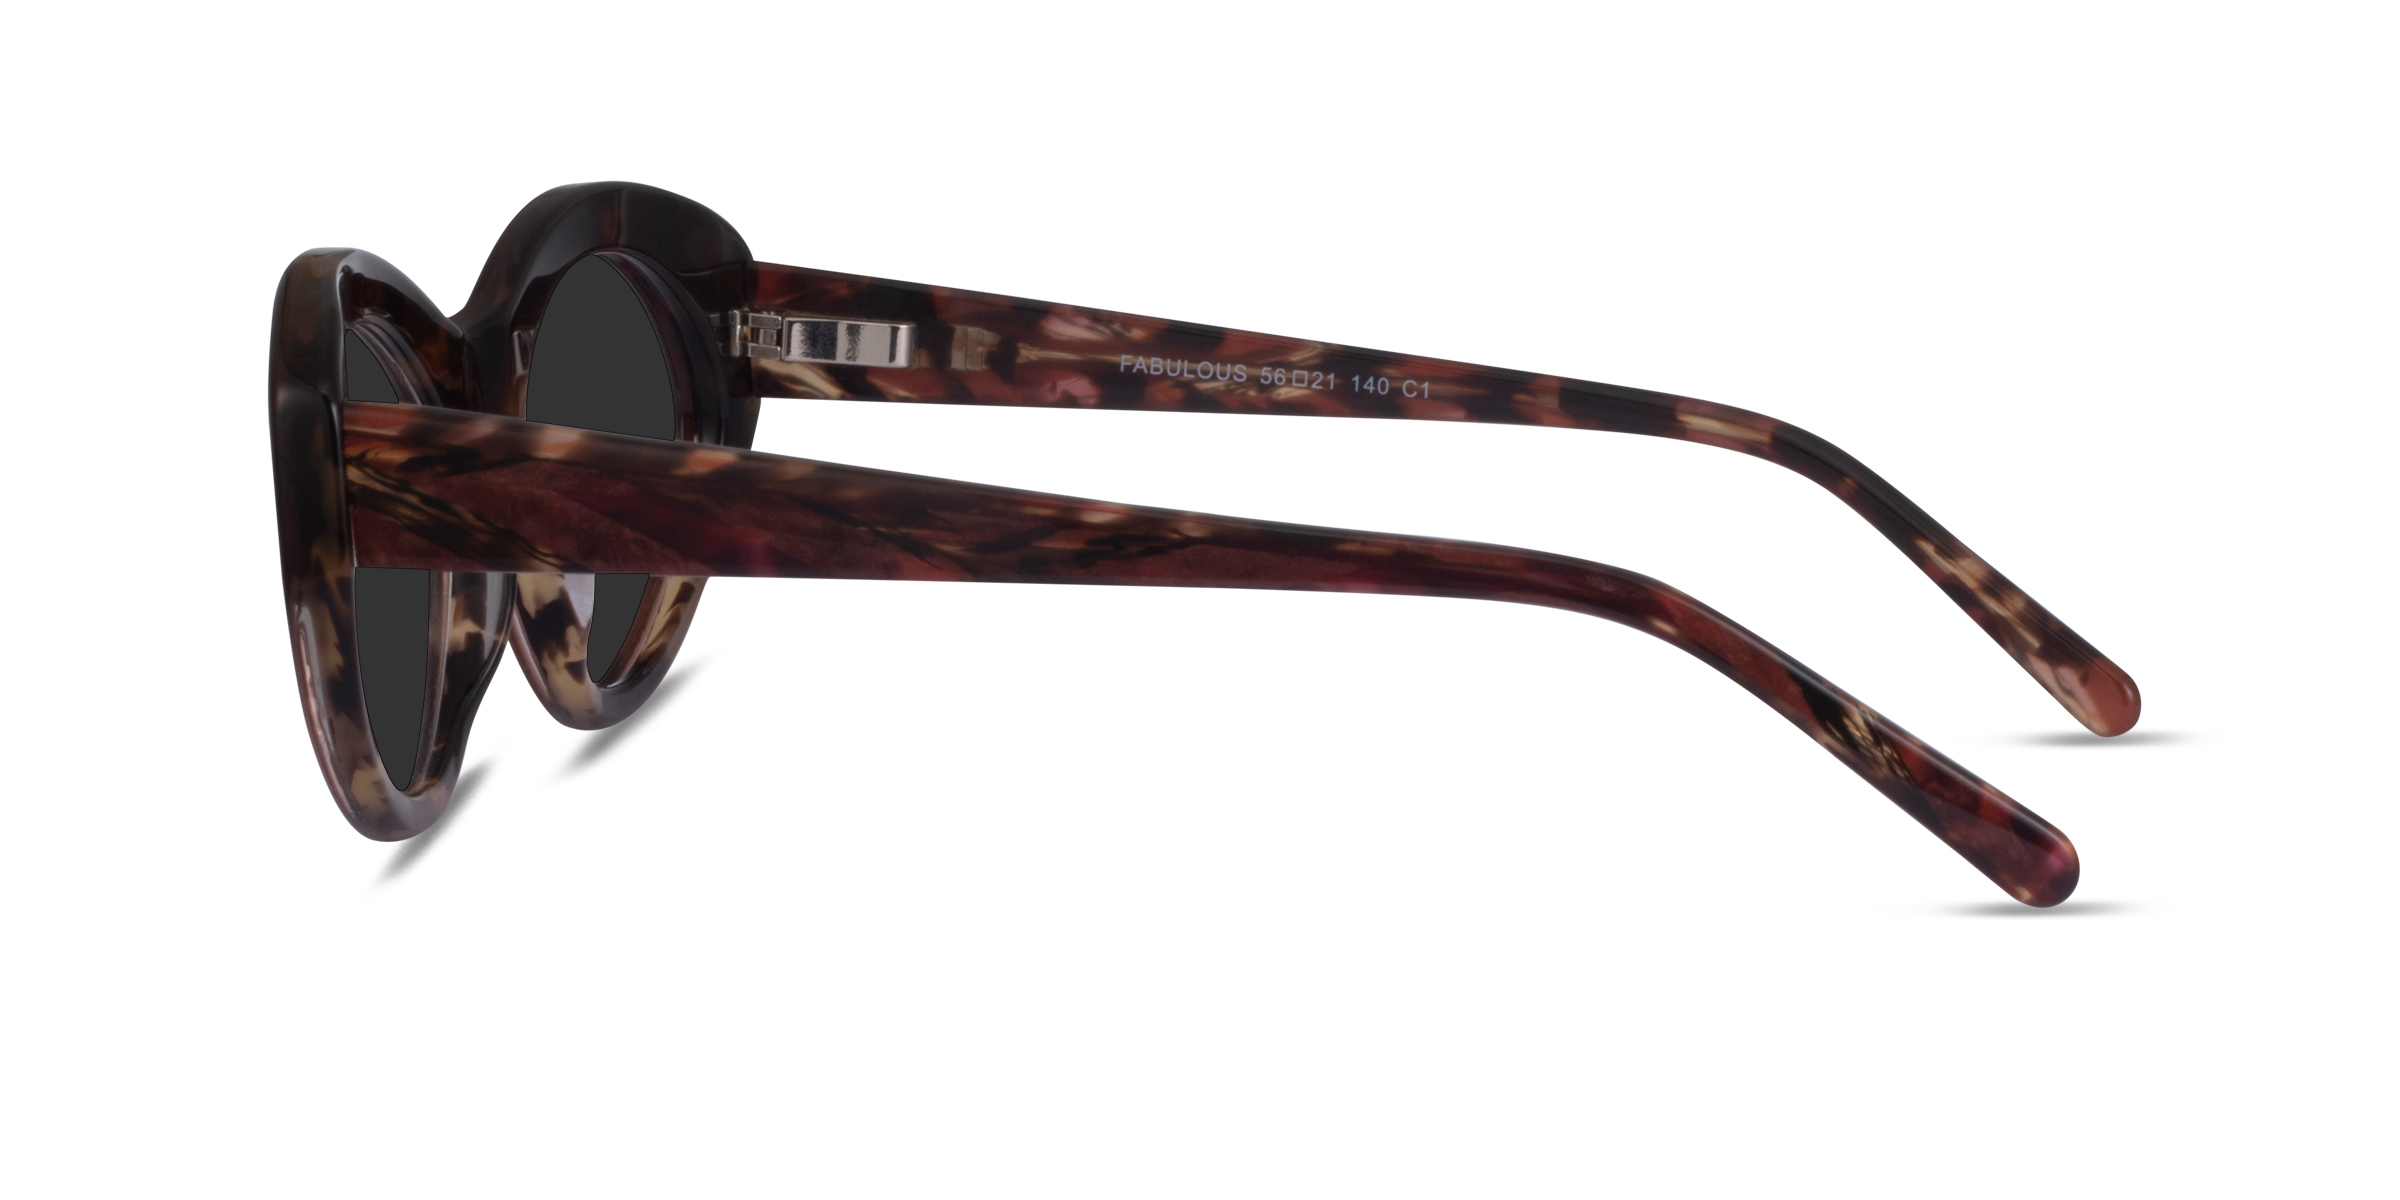 Fabulous - Cat Eye Striped Tortoise Frame Sunglasses For Women ...